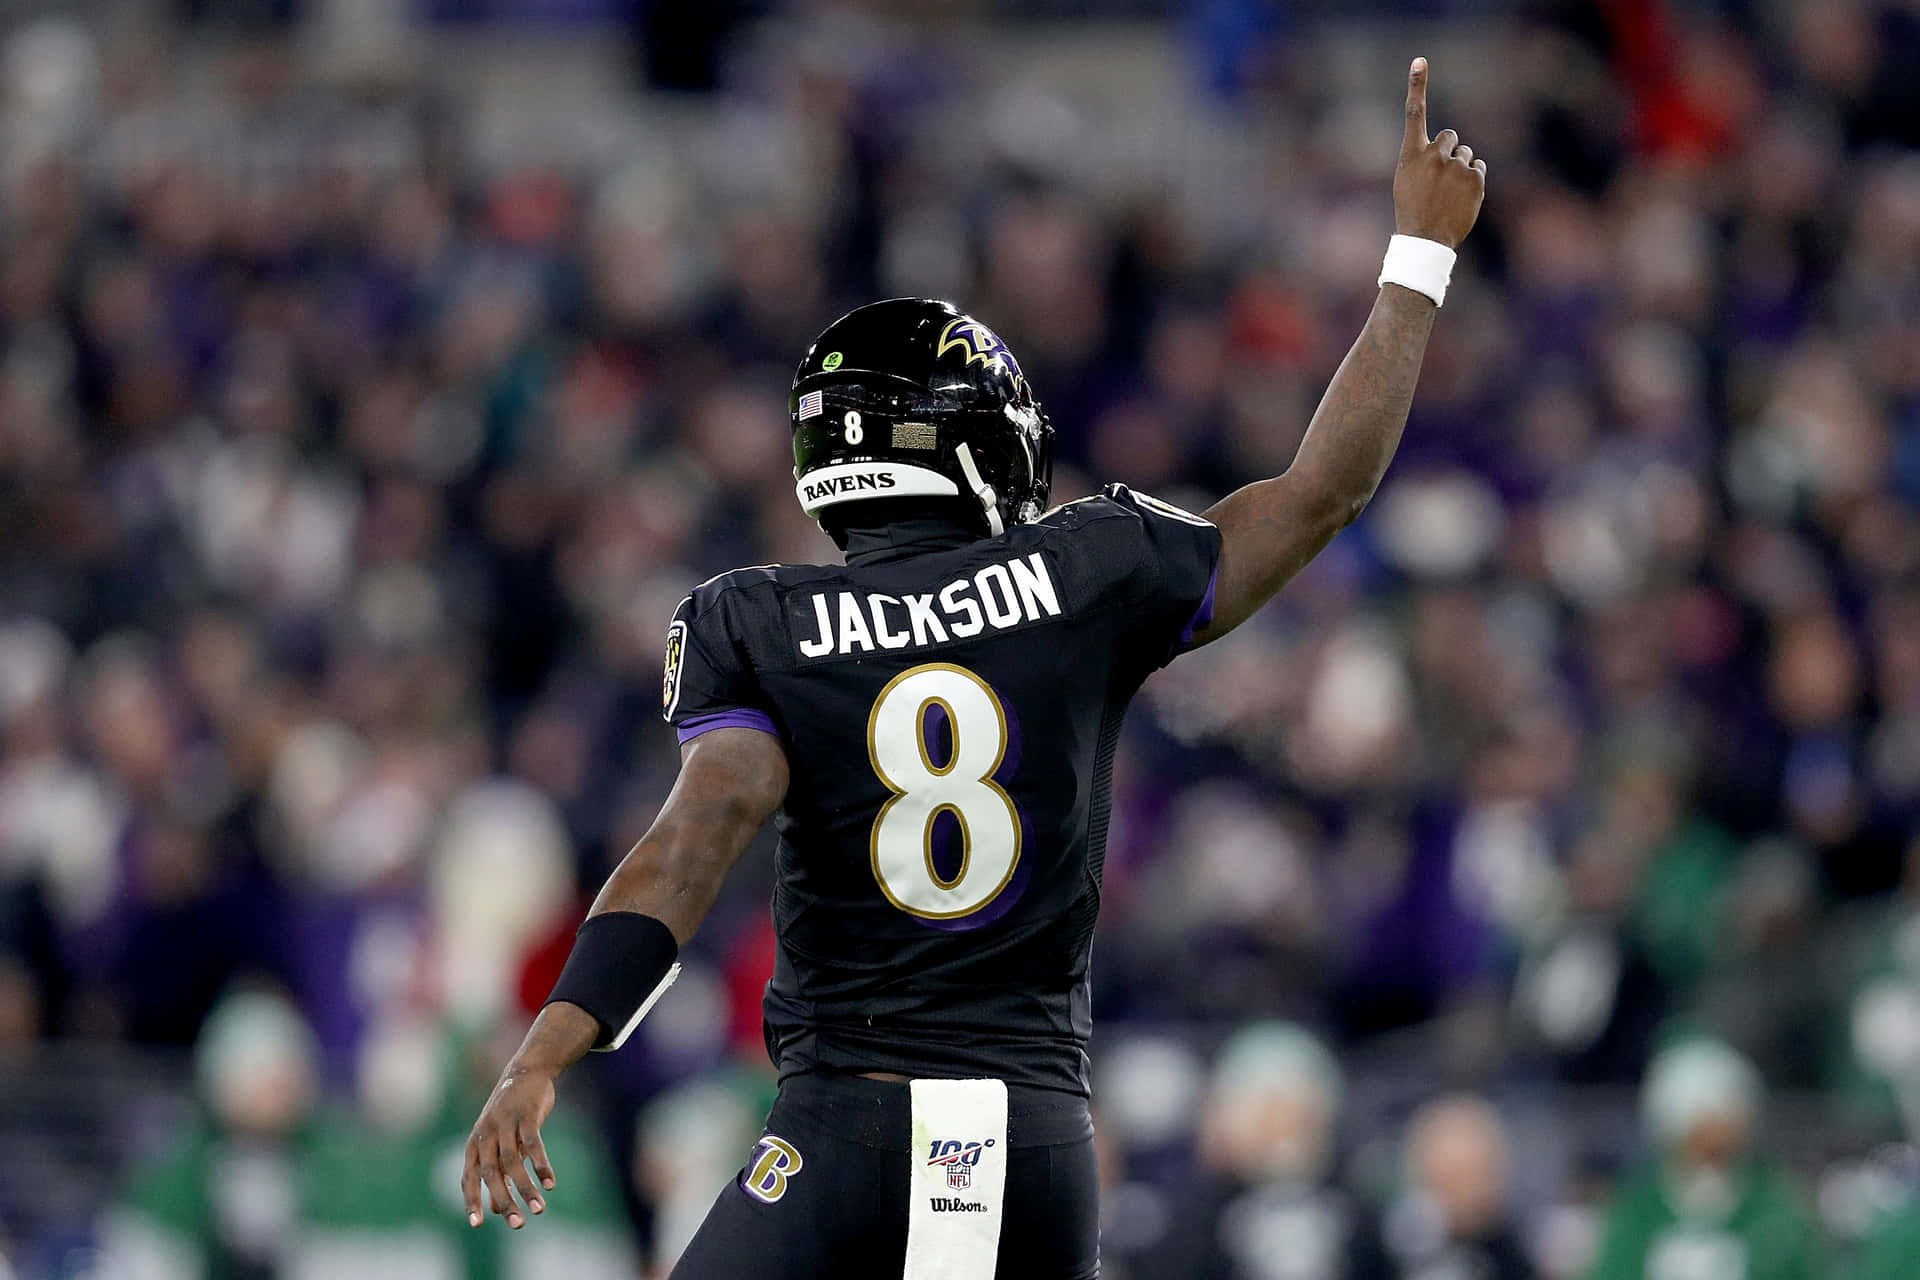 Elmariscal De Campo De Los Baltimore Ravens, Lamar Jackson, Celebra El Impulso Ganador Del Equipo En La Temporada De 2019. Fondo de pantalla